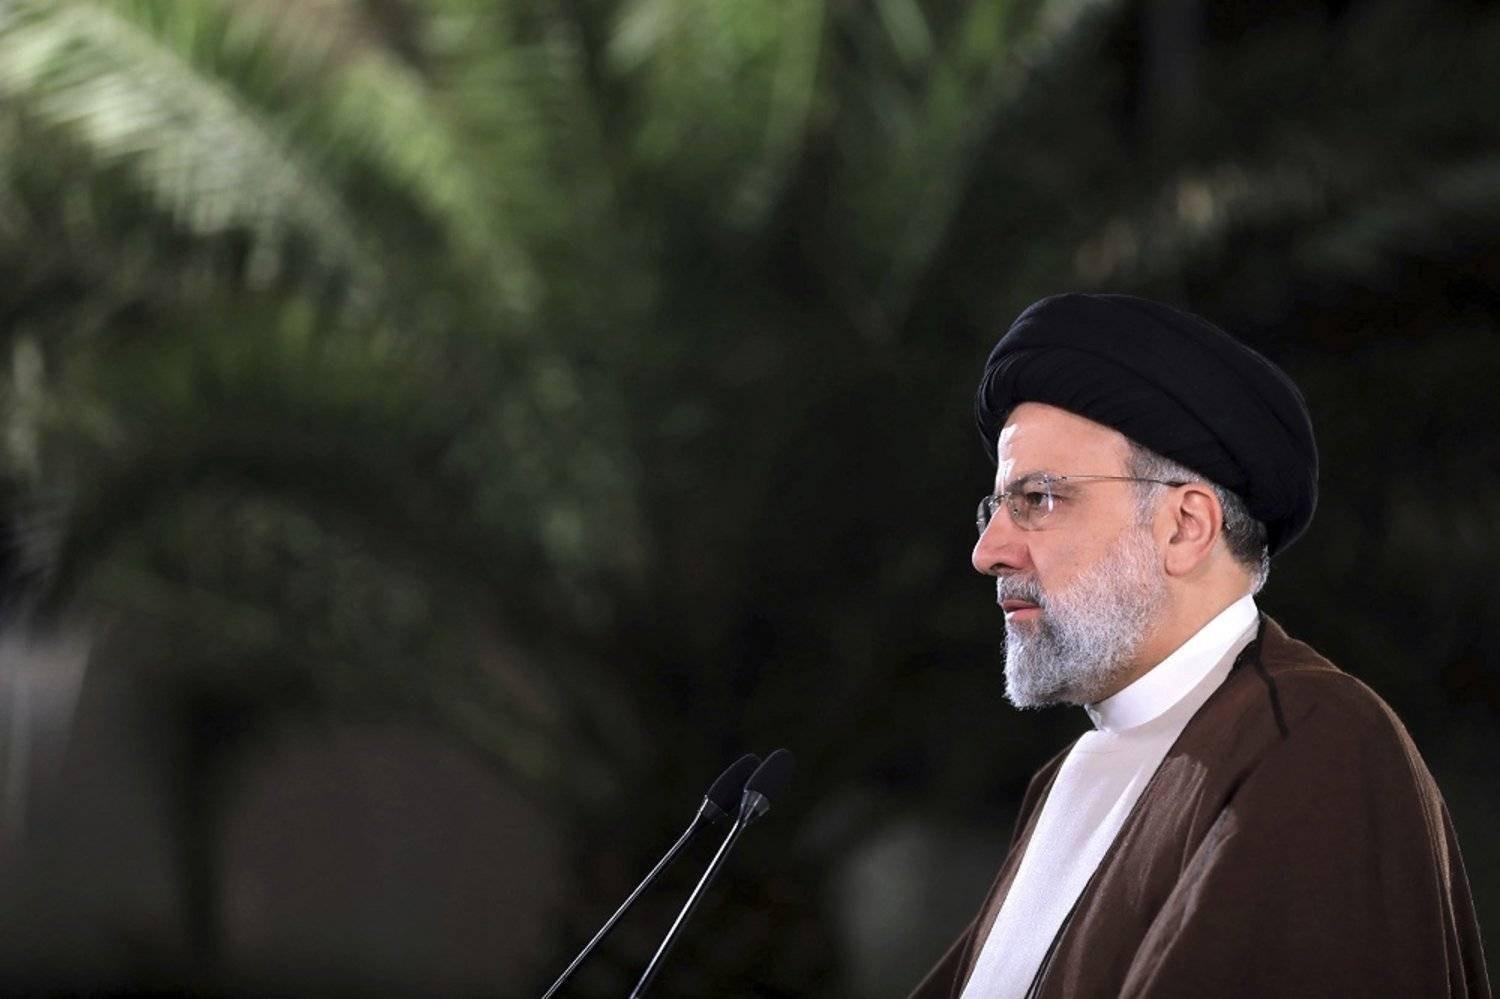 Իրանի նախագահին տեղափոխող ուղղաթիռն անհետացել է. ինչ է հայտնի այս պահի դրությամբ